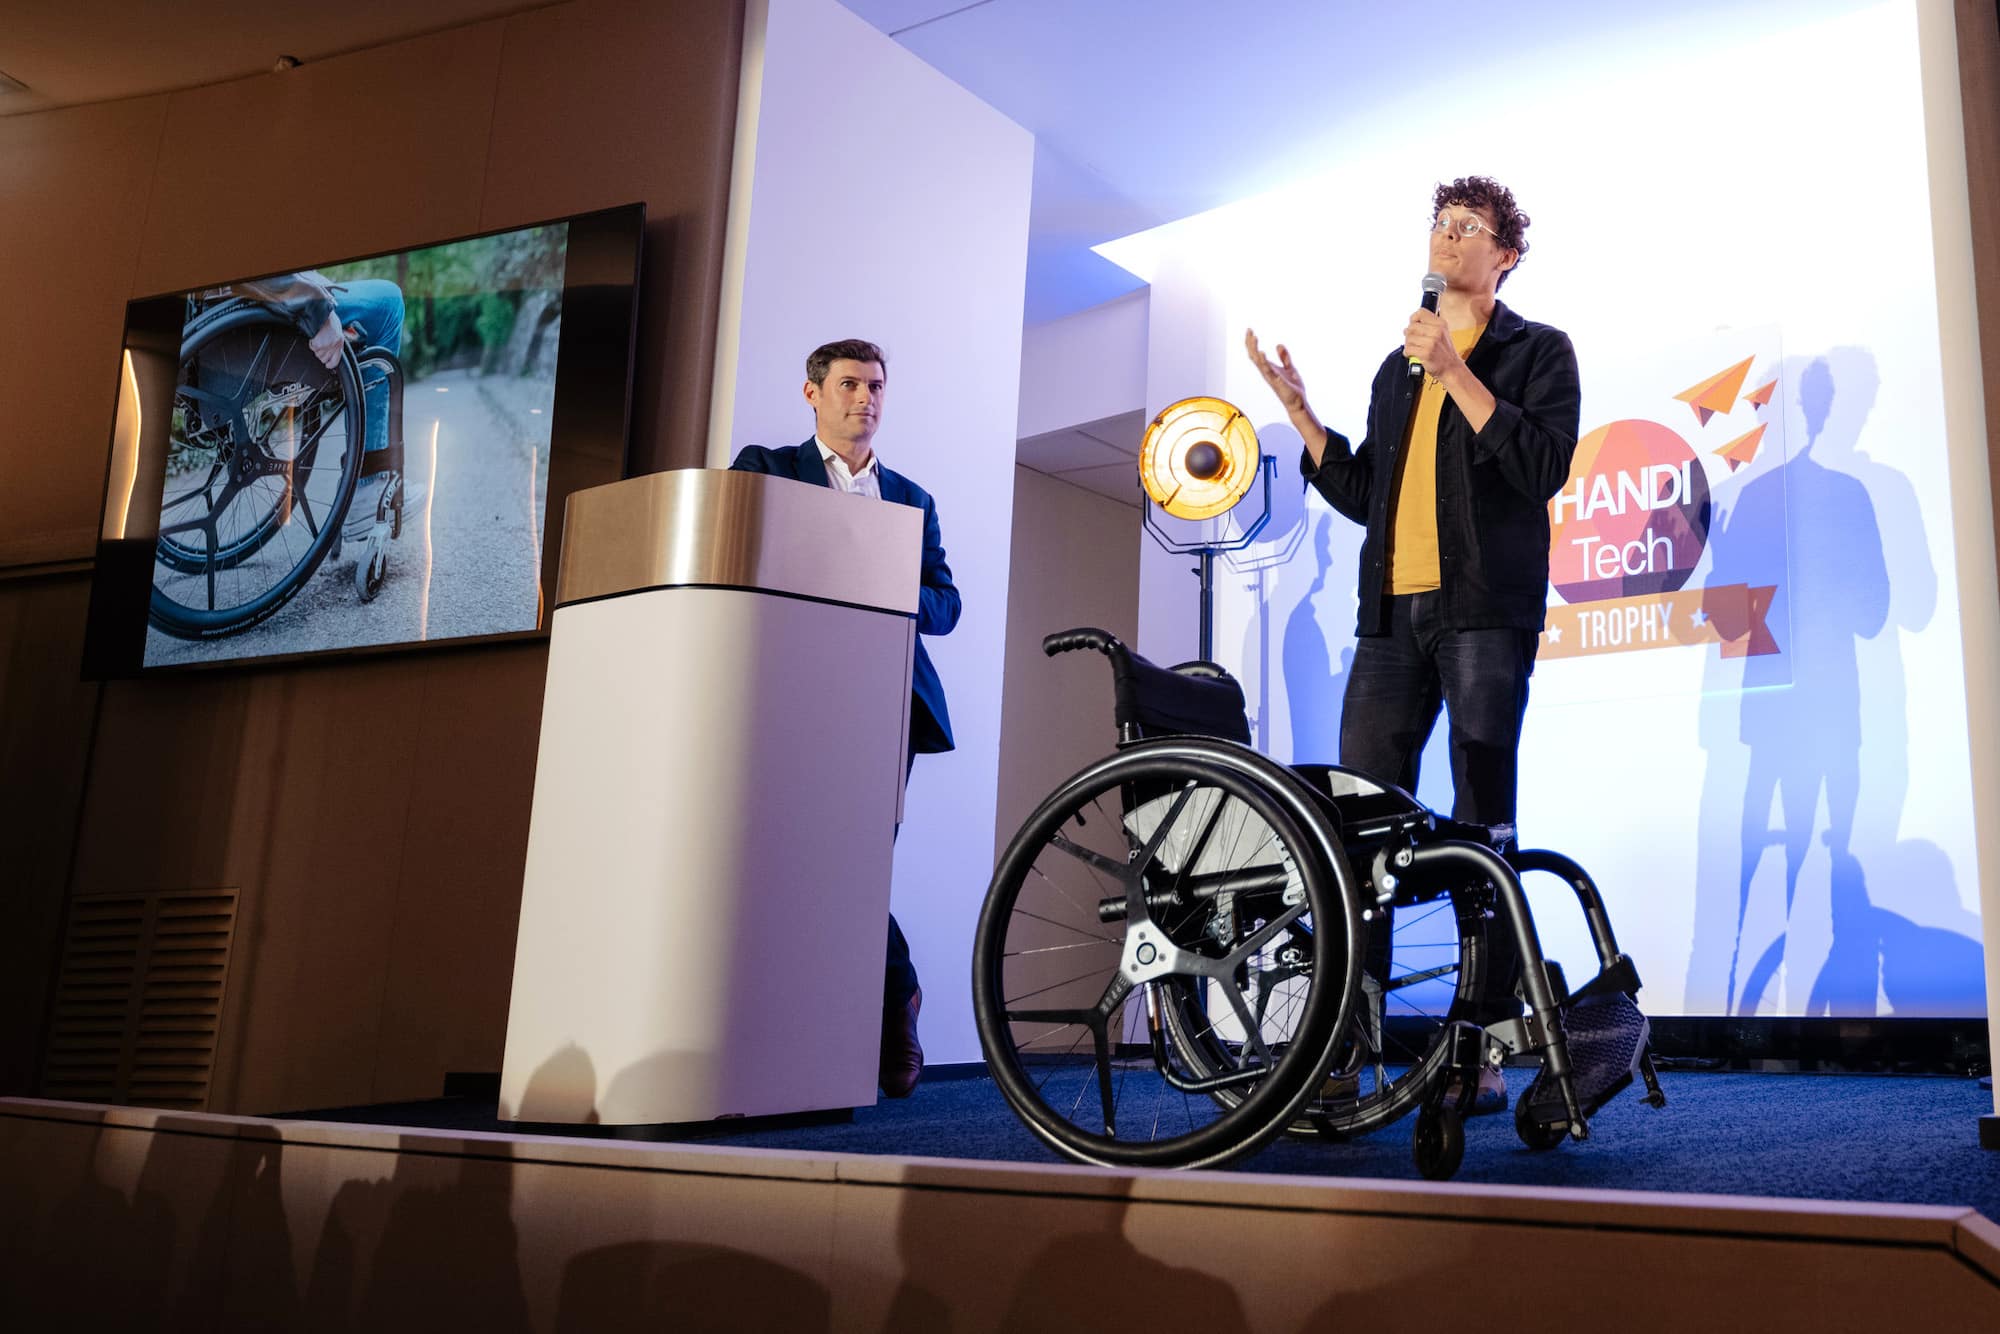 handitech trophy, Handitech Trophy récompense les innovations au service du handicap, Made in Marseille